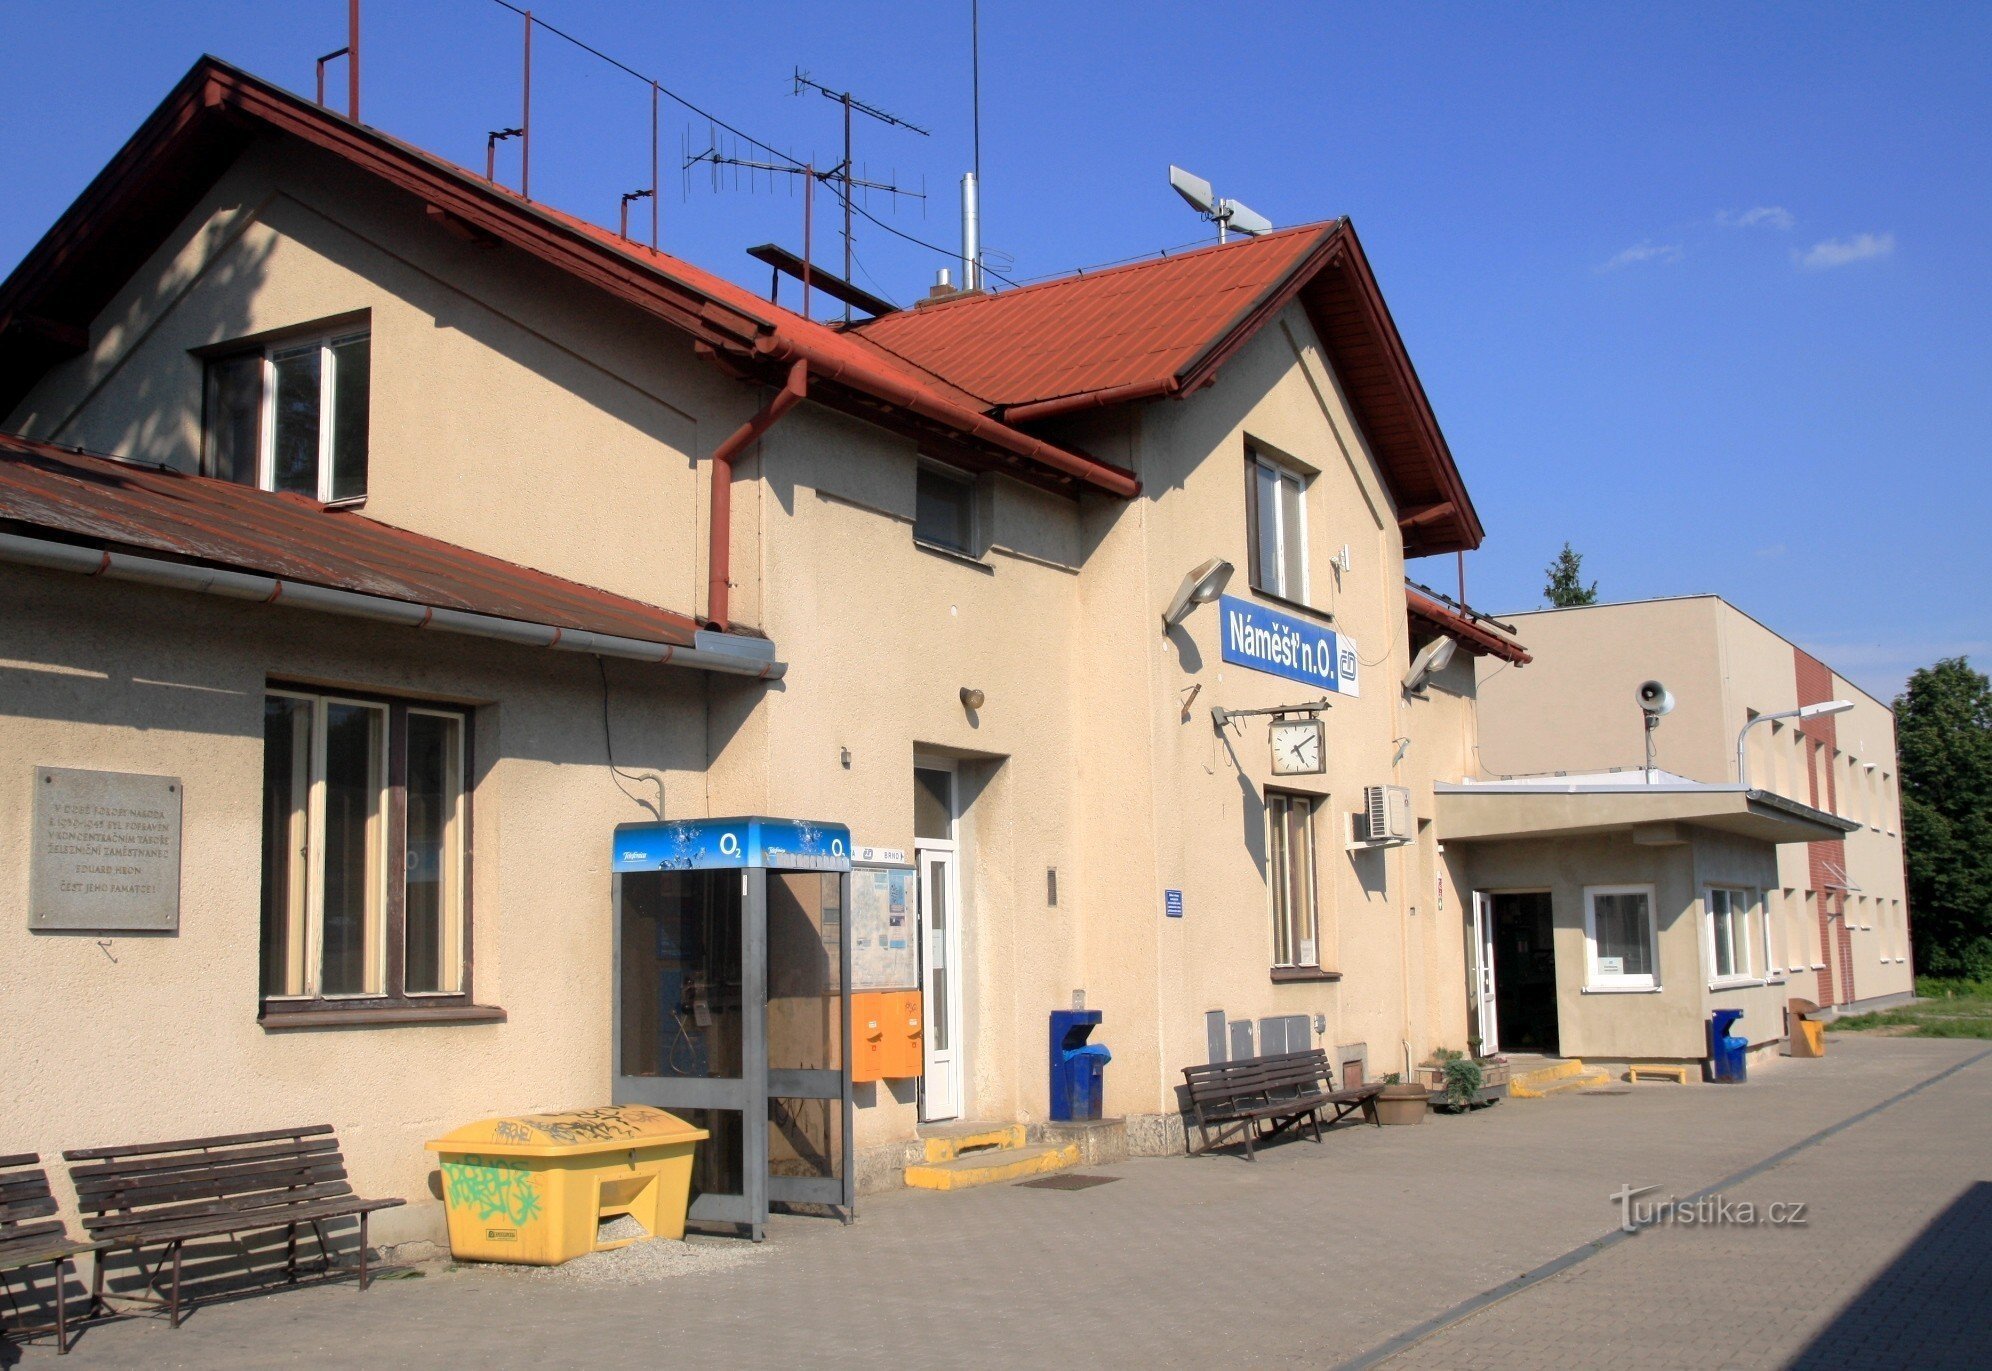 Náměšť nad Oslavou - railway station